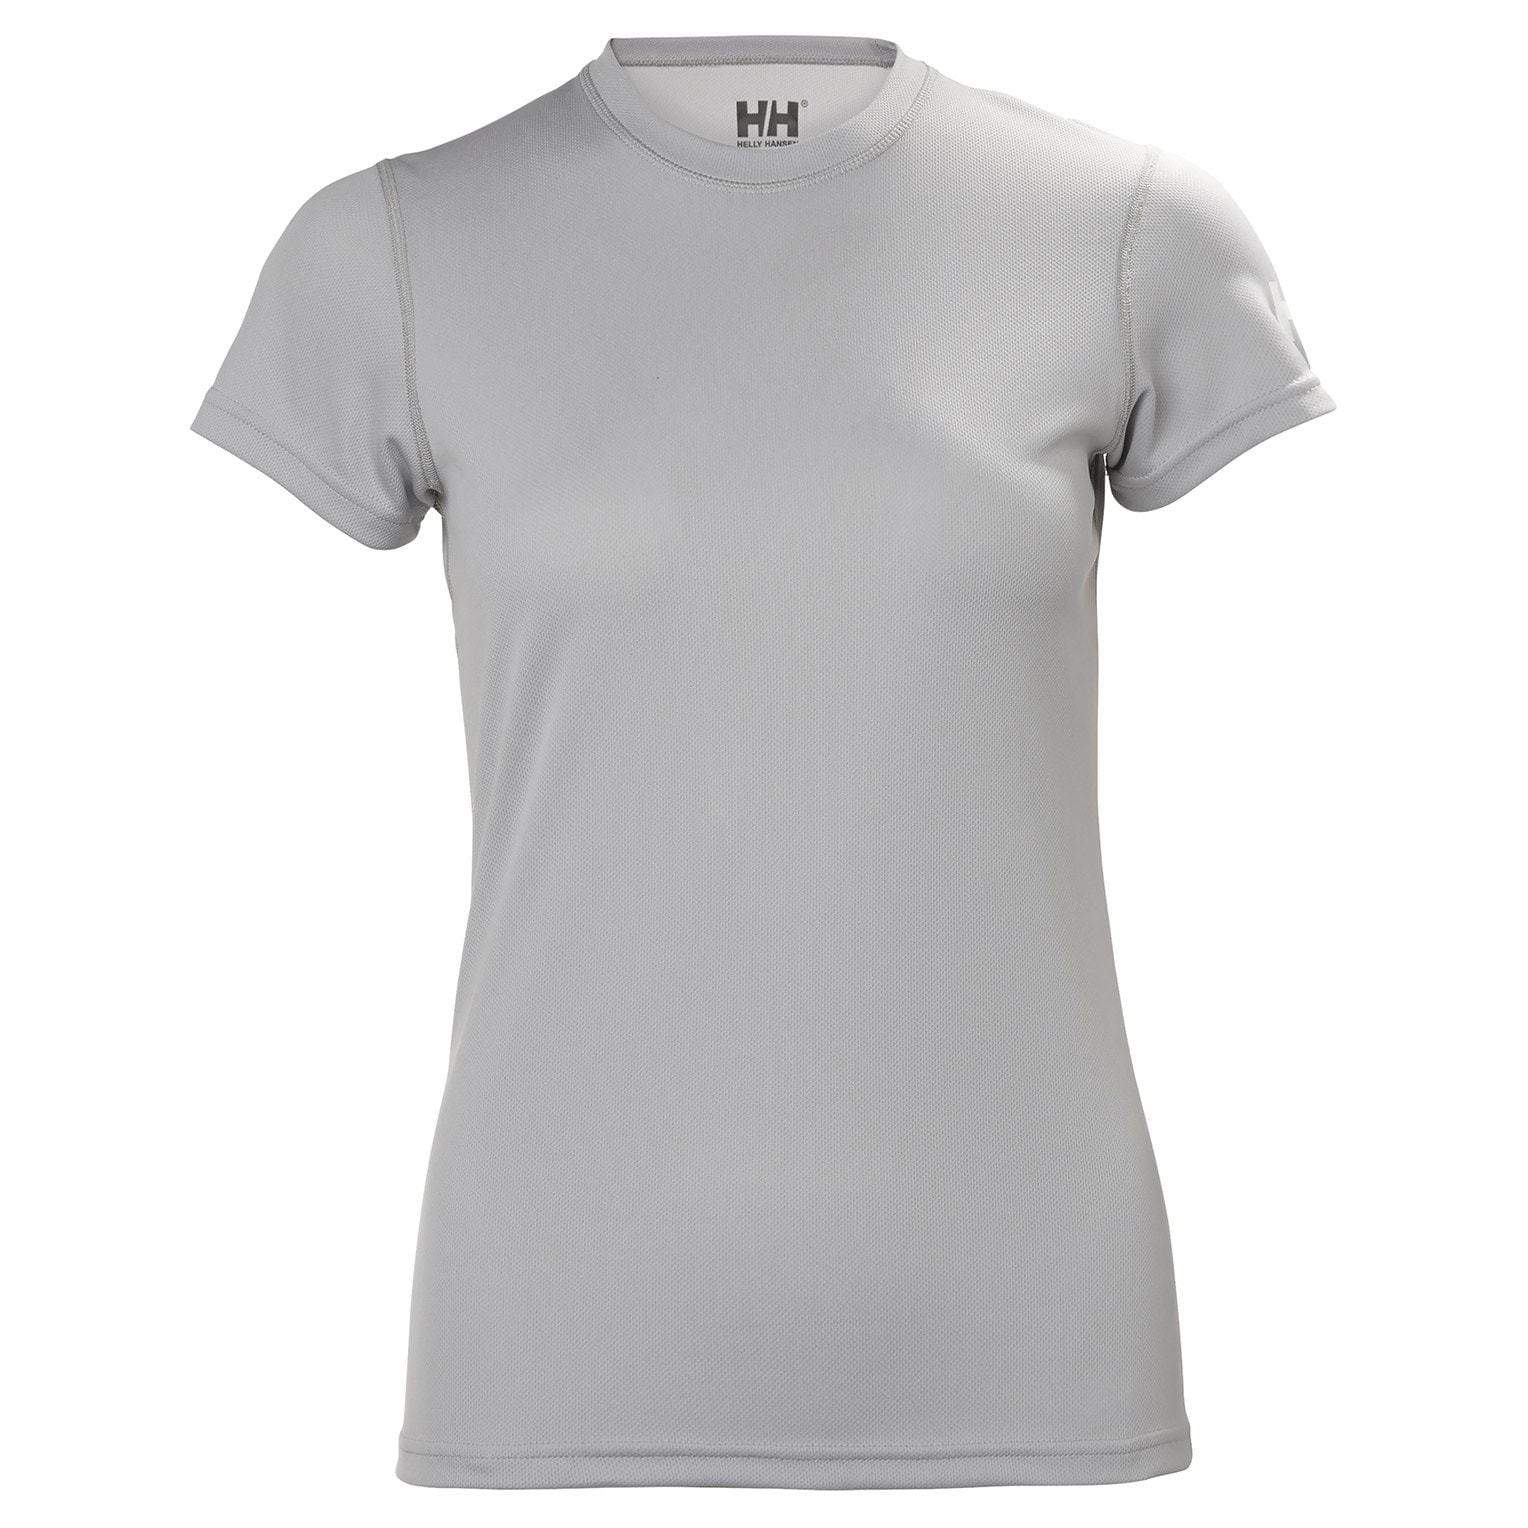 Helly Hansen T-shirts XS / Light Grey Helly Hanson - Women's HH Tech T-shirt